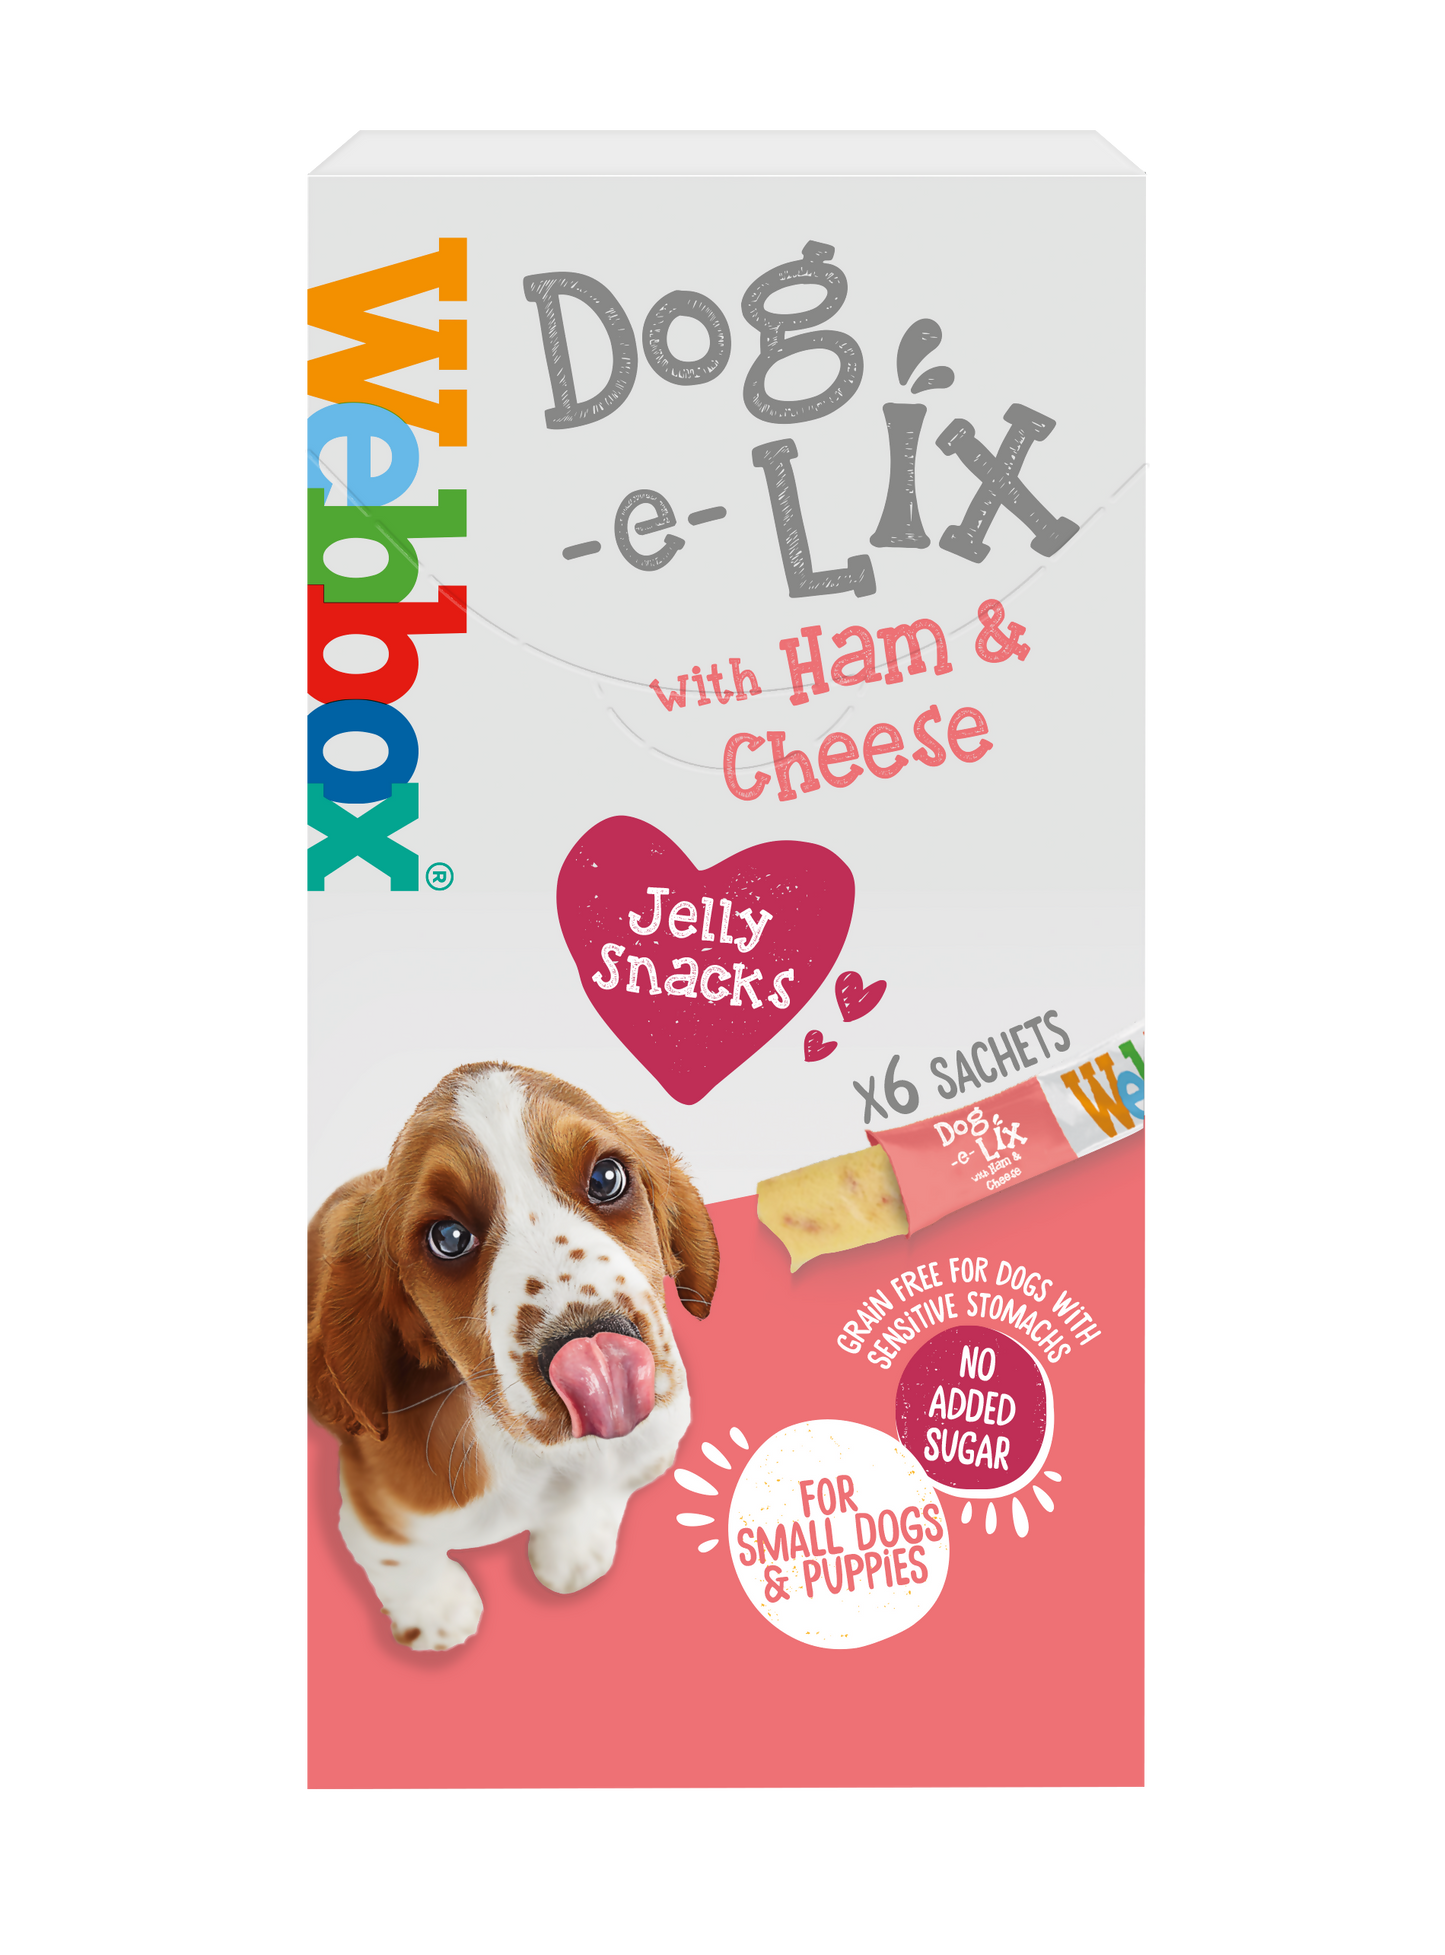 Webbox Dog e Lix with Ham & Cheese Creamy Dog Treats